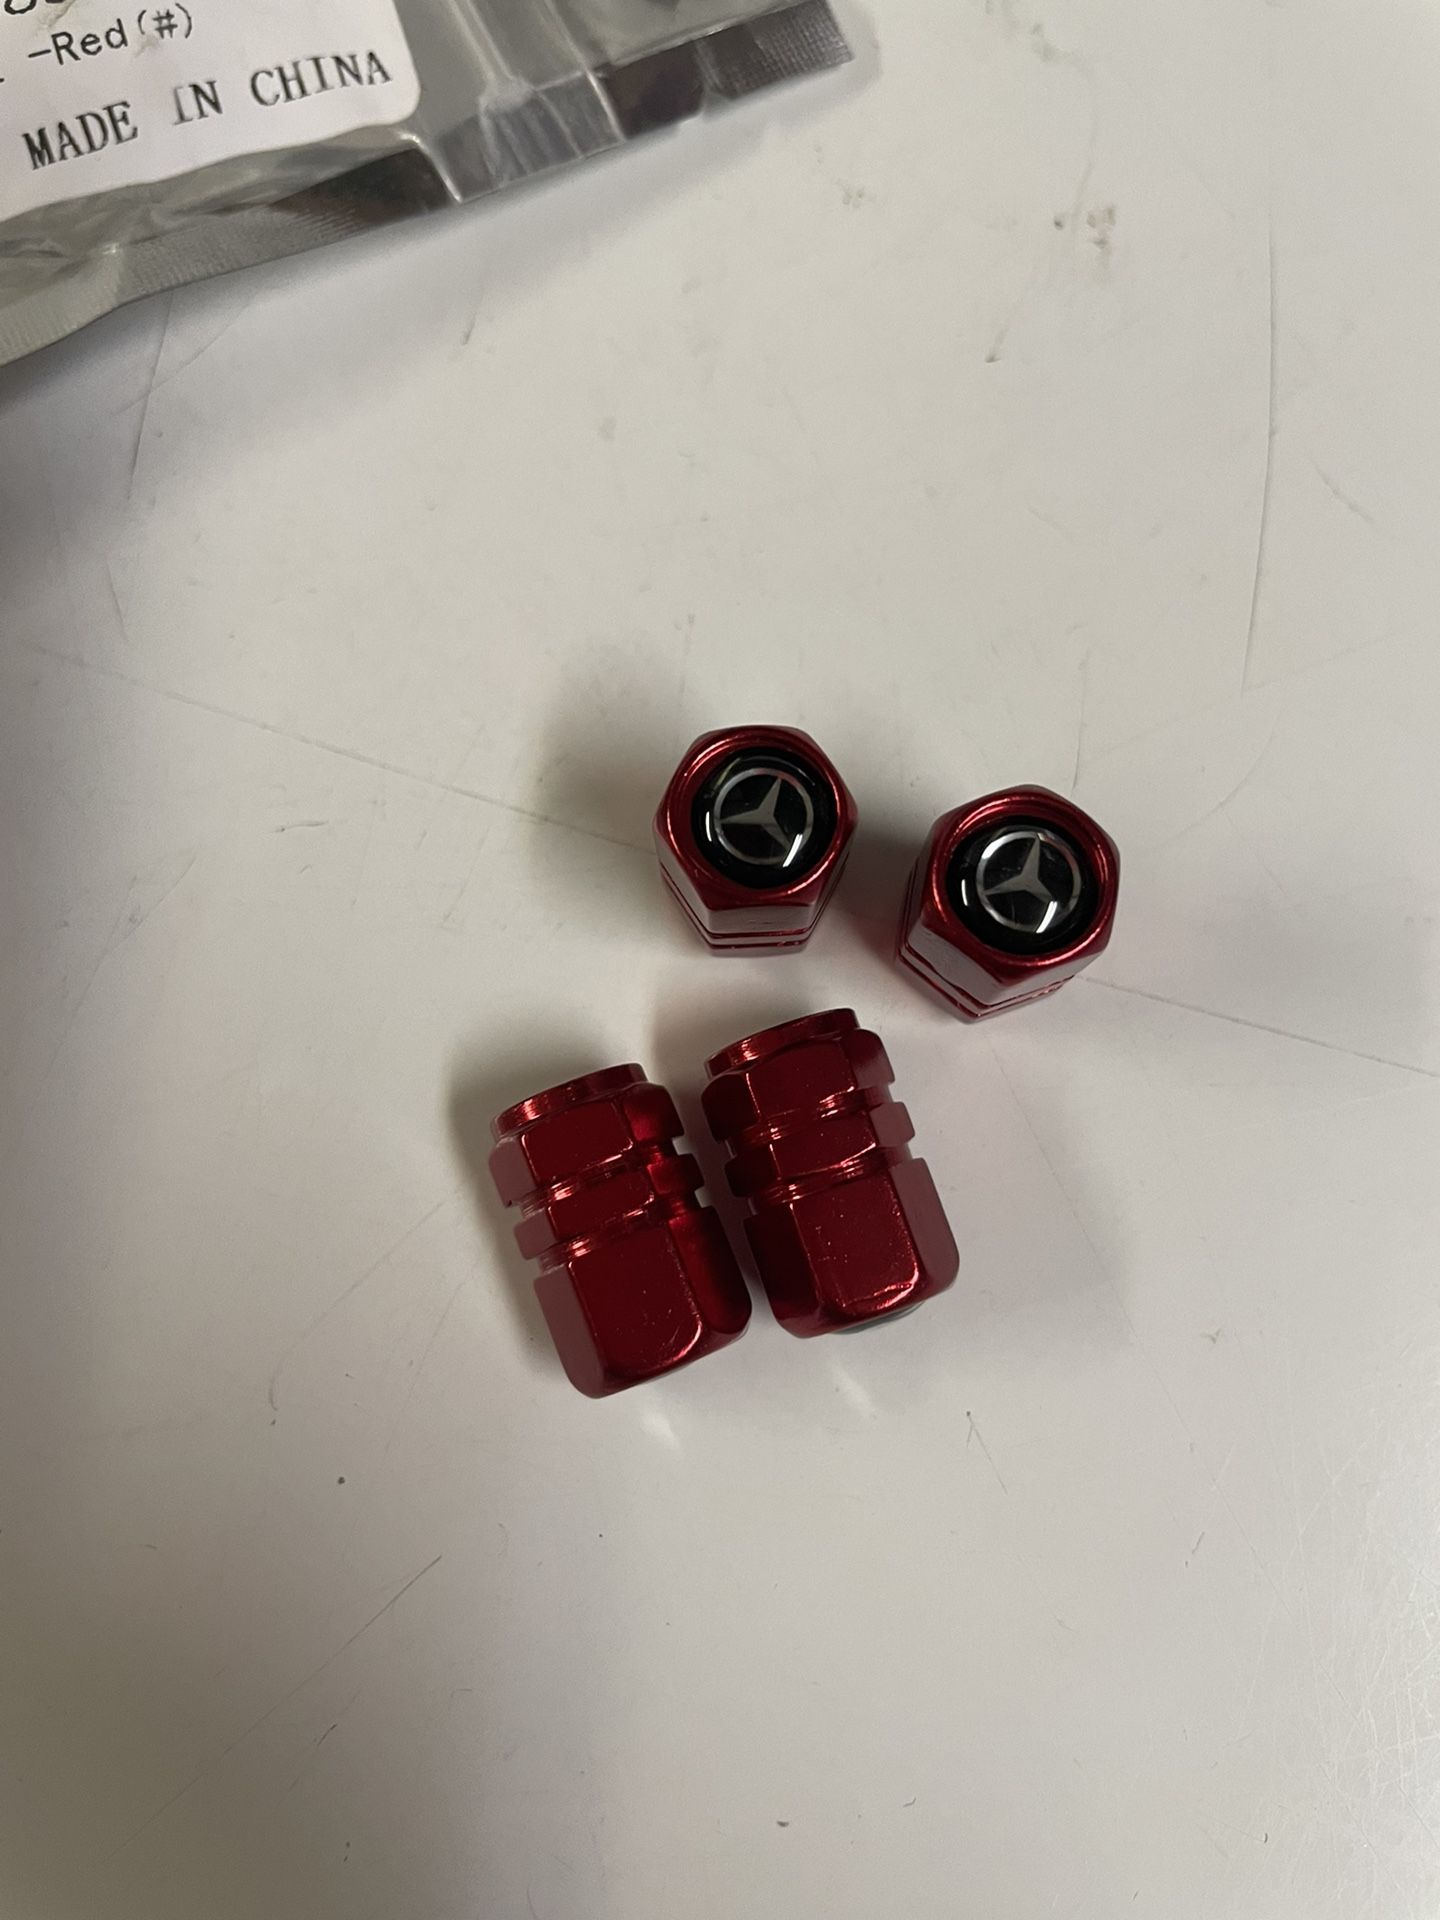 Red Mercedes Valve Stem Caps